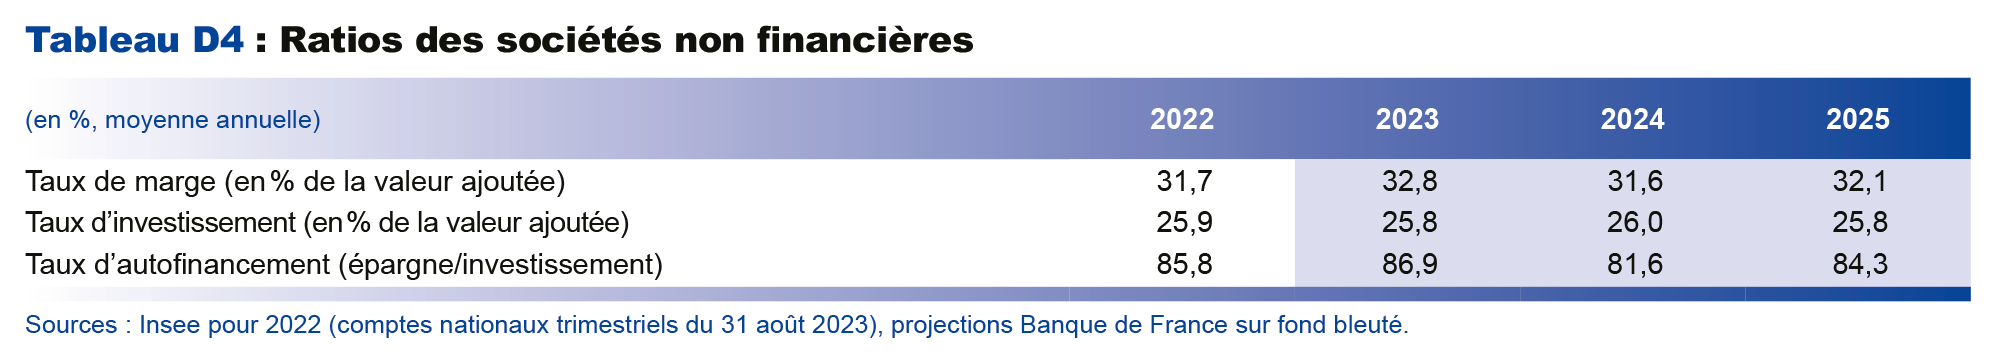  Projections macroéconomiques septembre 2023 - Ratios des sociétés non financières